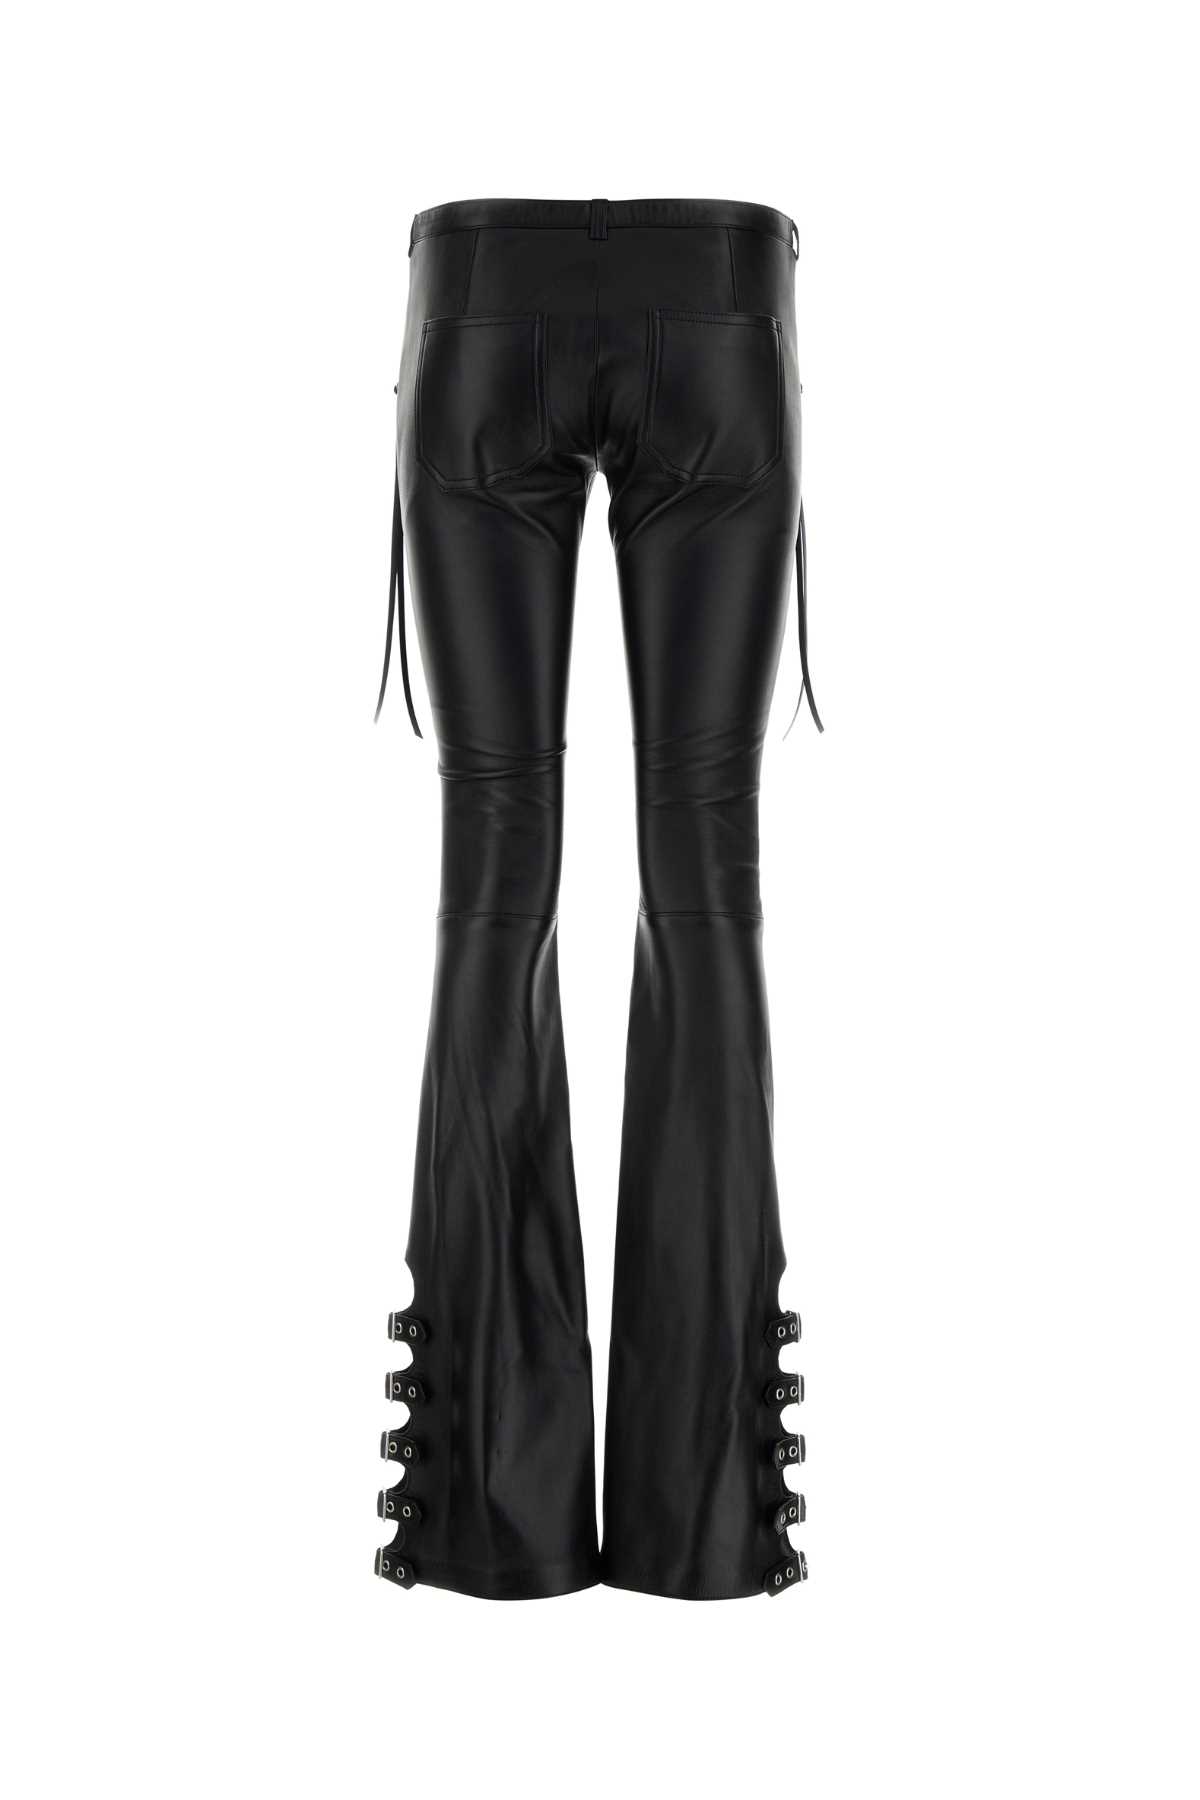 Shop Courrèges Black Nappa Leather Pant